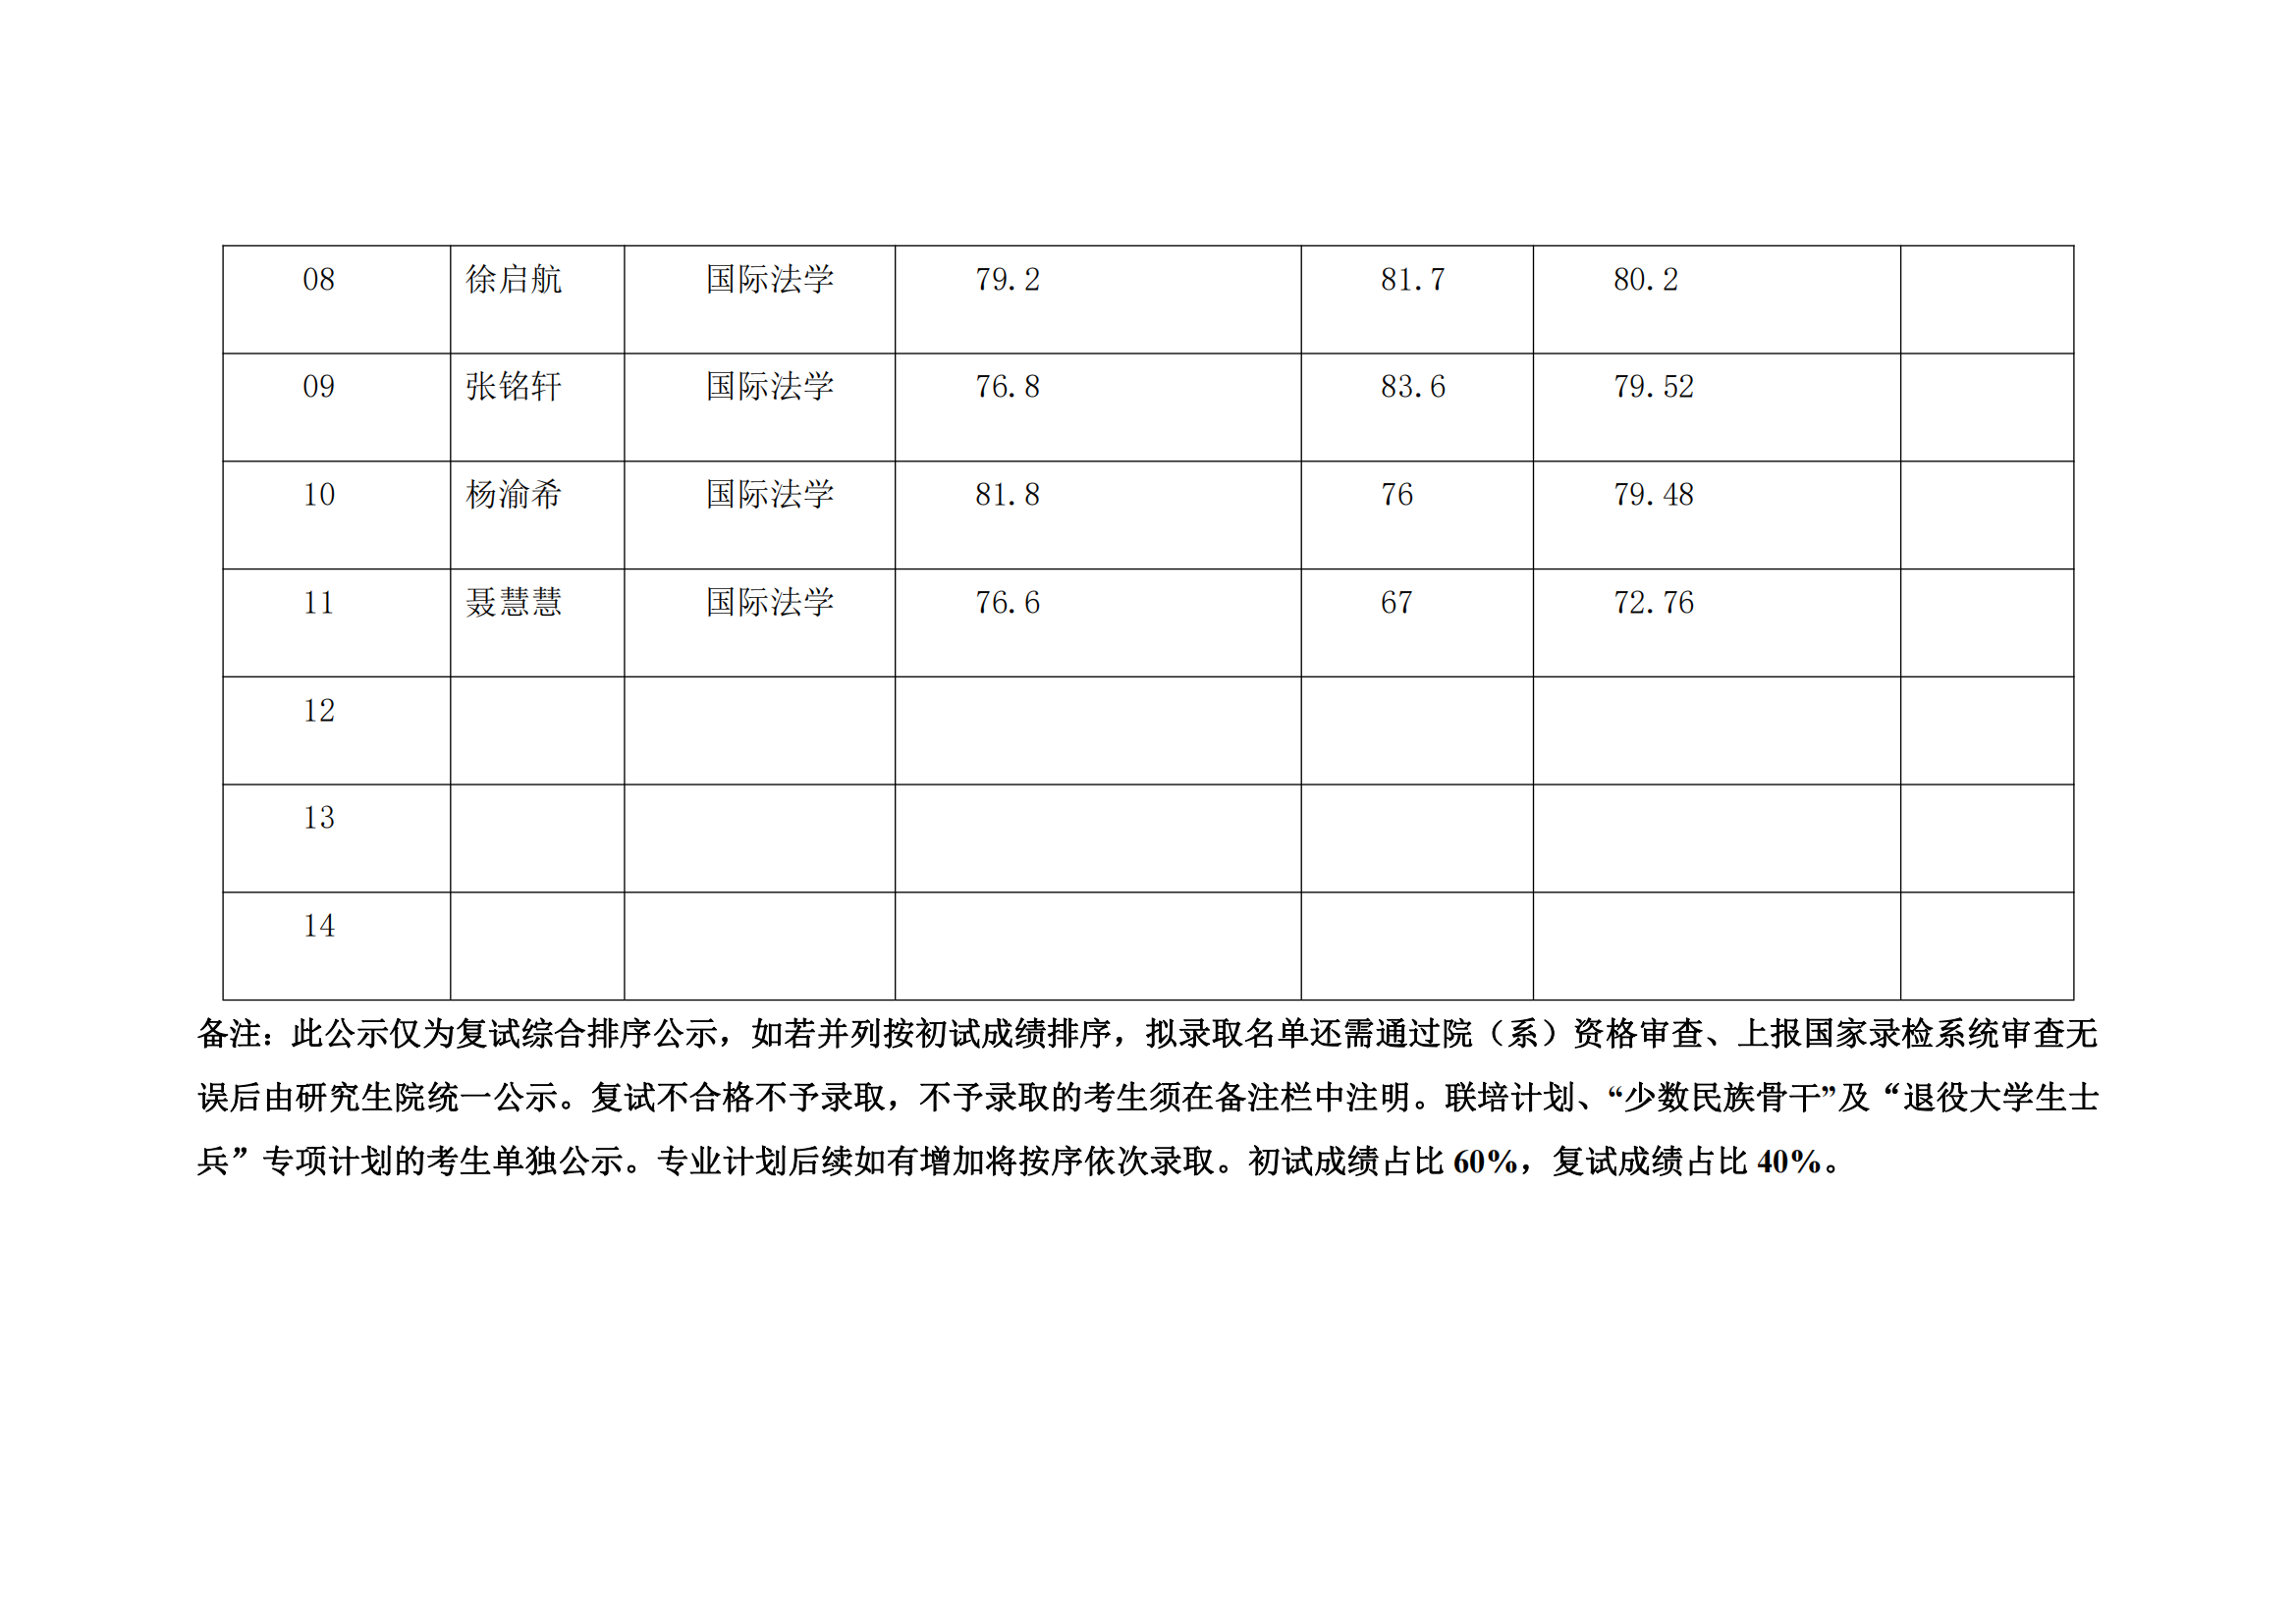 郑州大学2022年硕士研究生复试结果综合排序公示表【国际法】_01.png